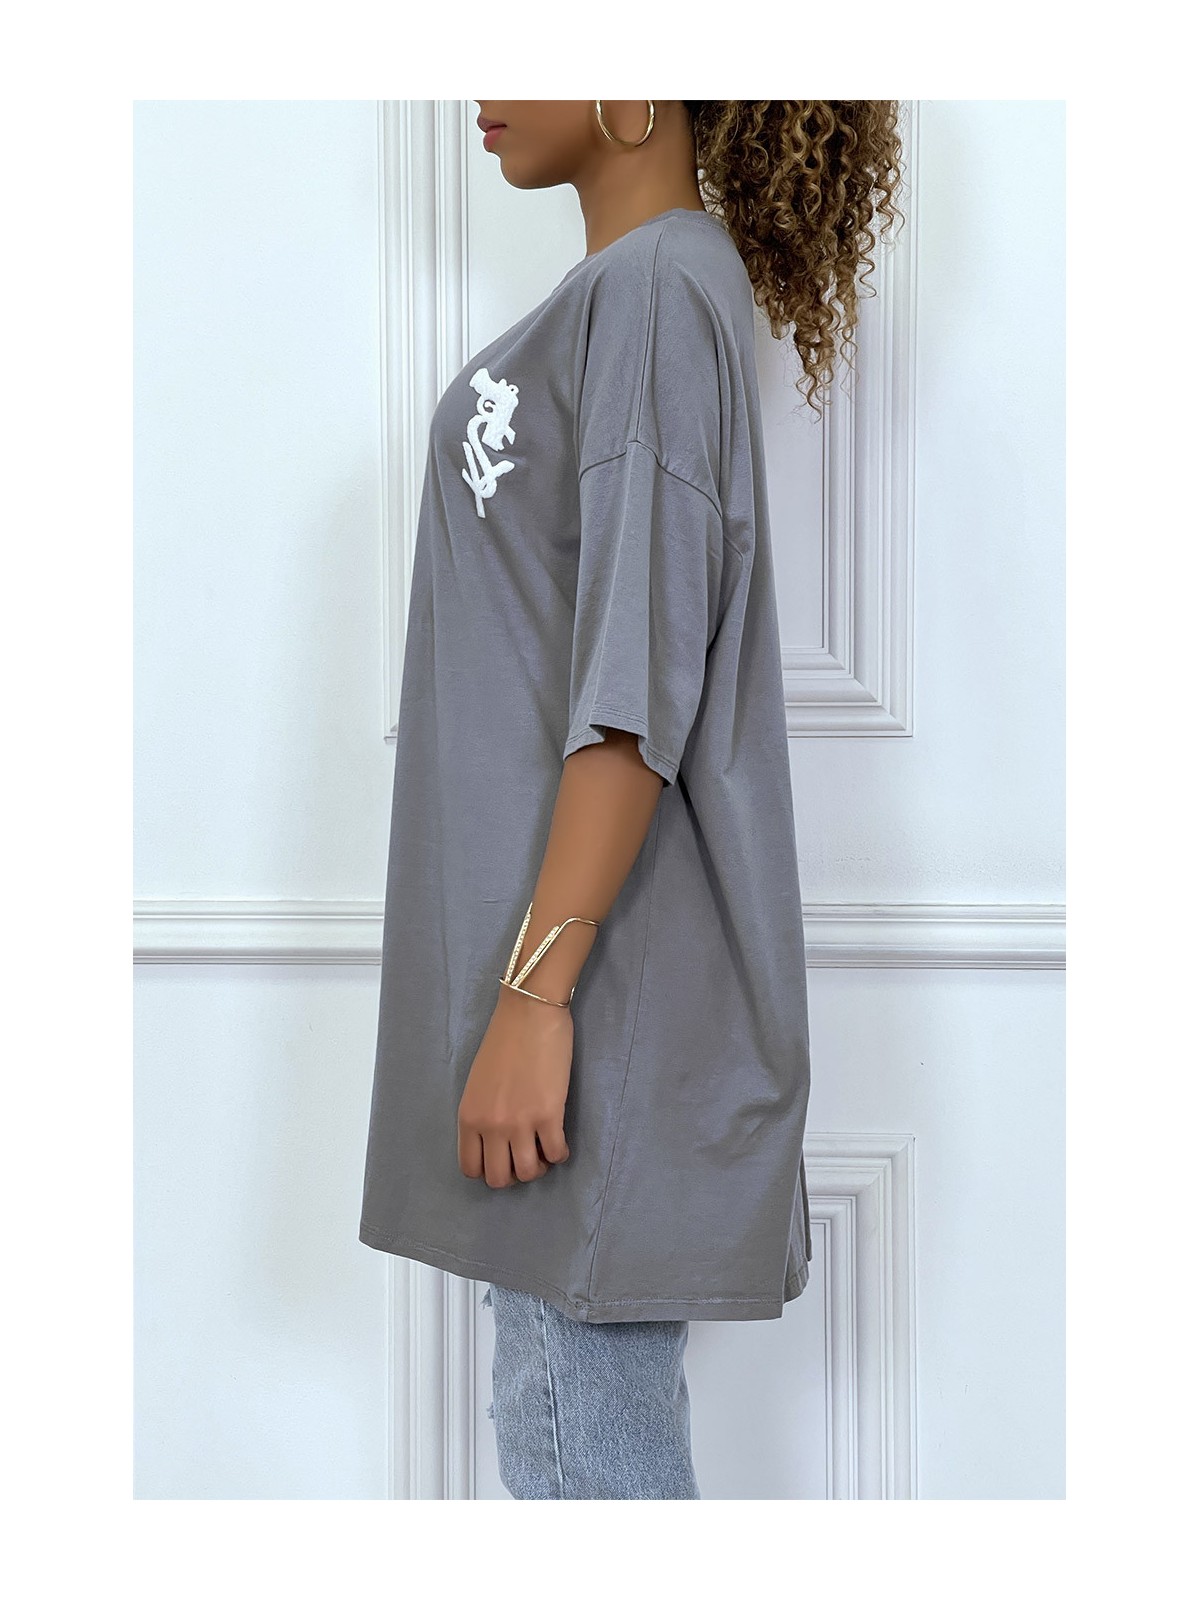 Tee-shirt oversize anthracite tendance avec dessin en coton - 3